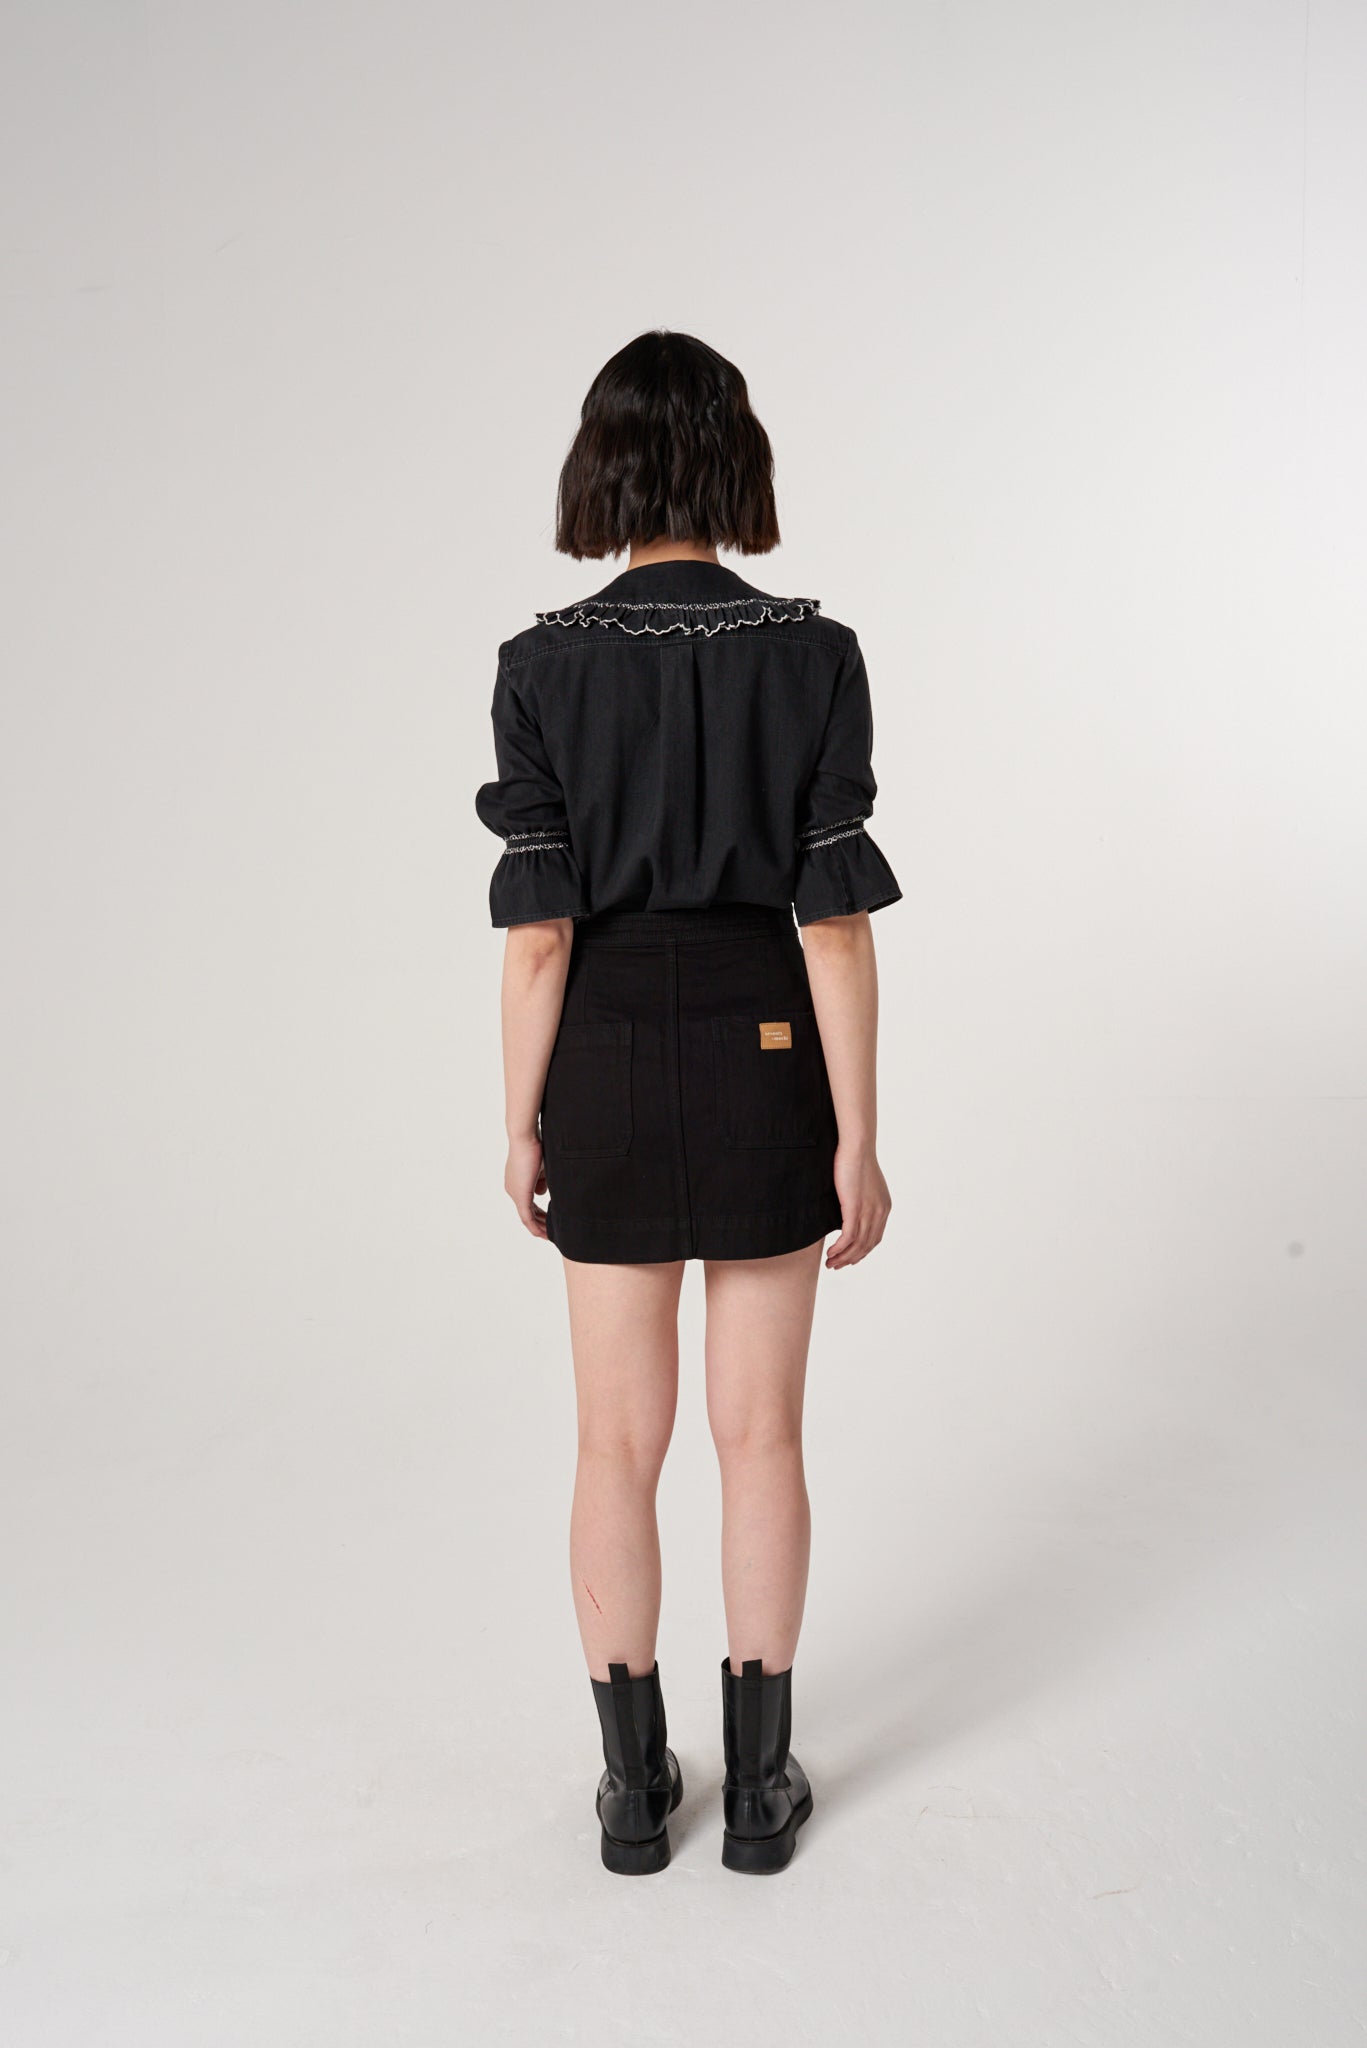 Marie Mini Skirt in Black Denim